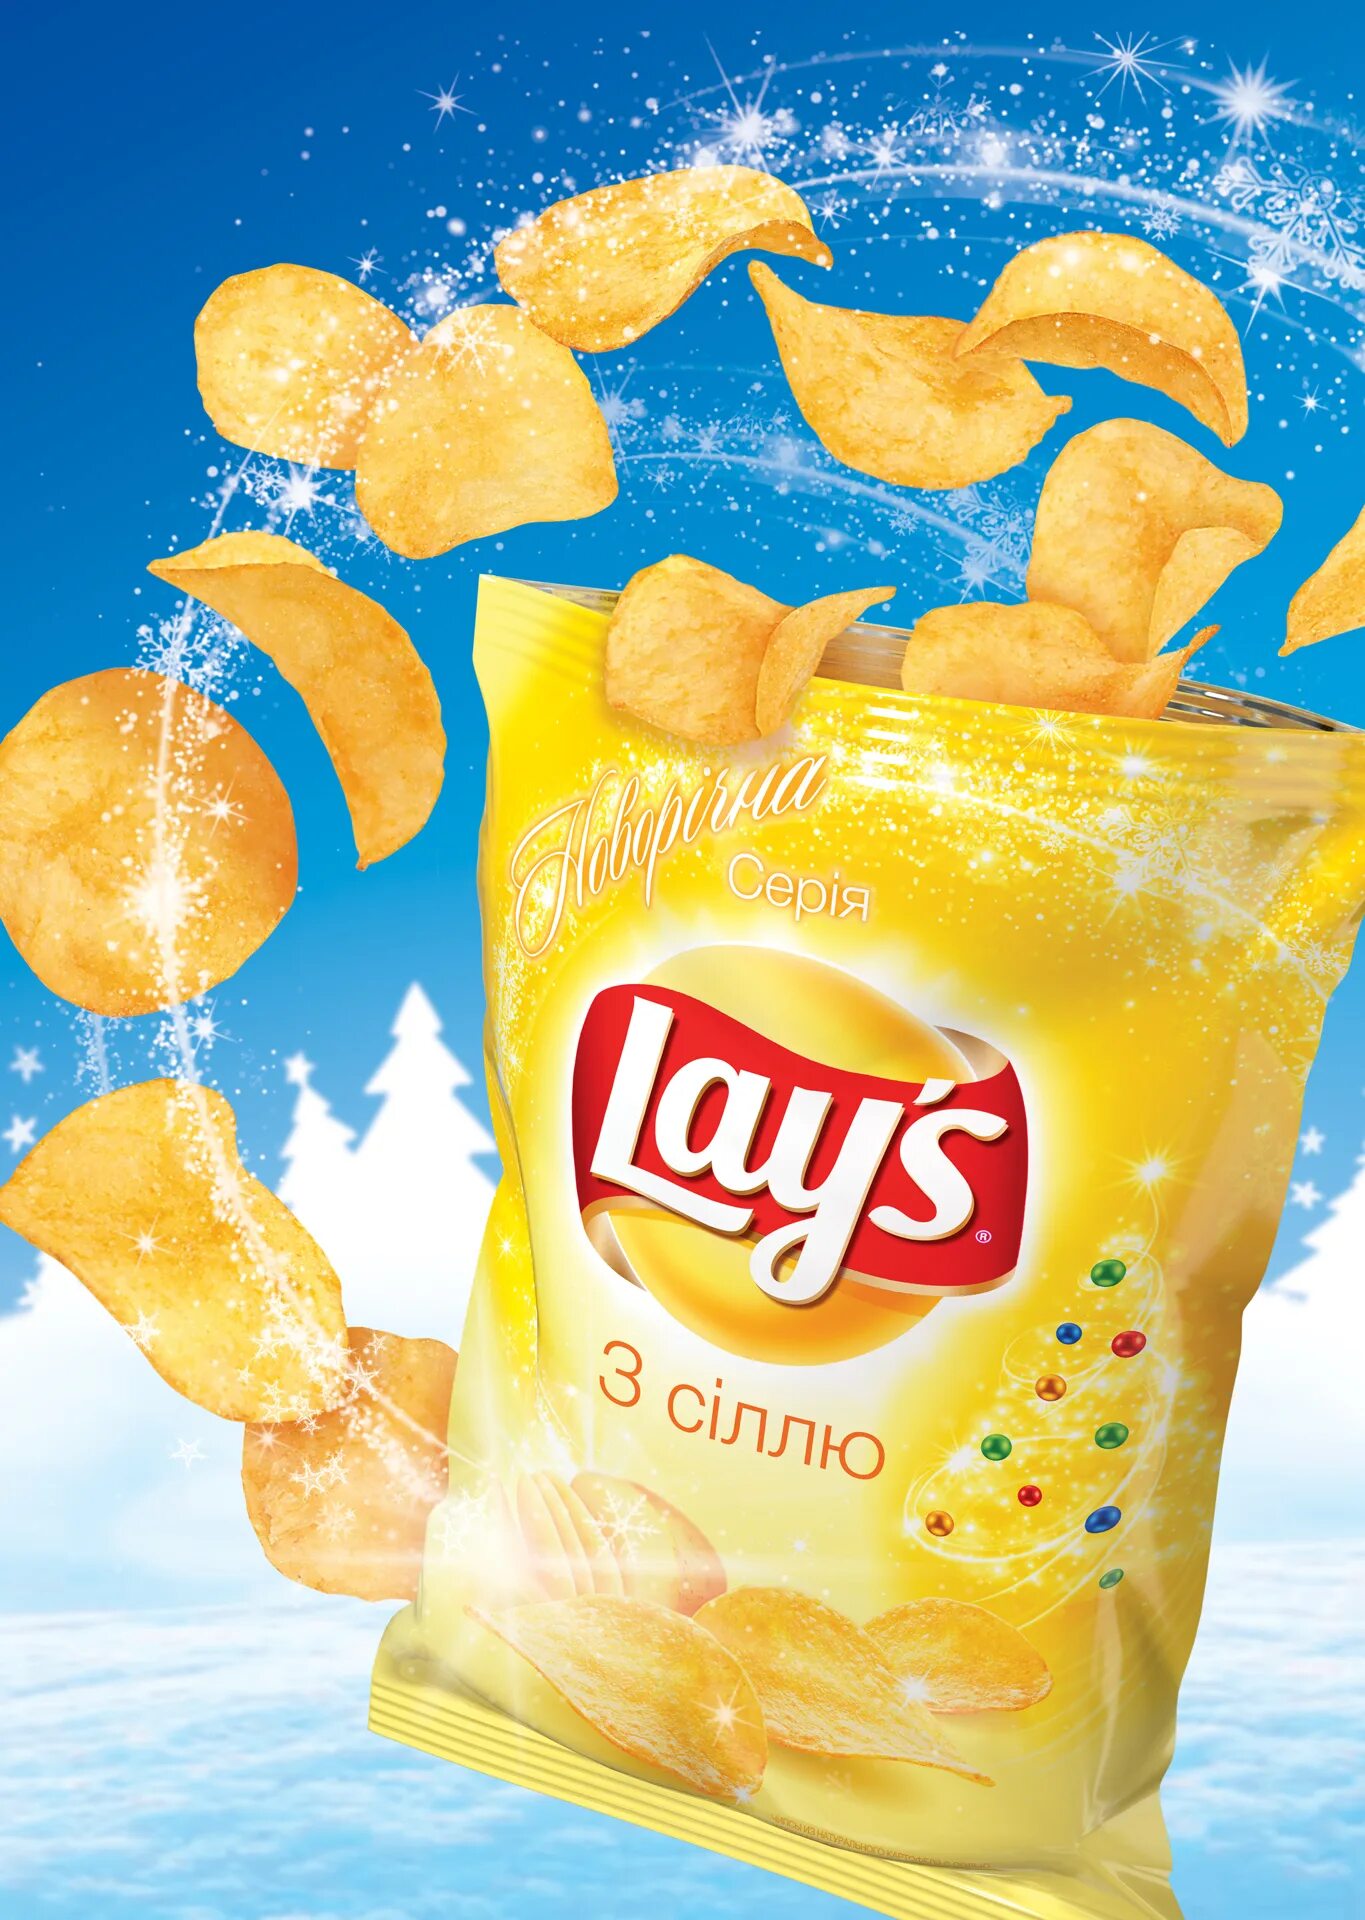 Реклама чипсов. Лейс. Lays чипсы реклама. Рекламный плакат чипсов.